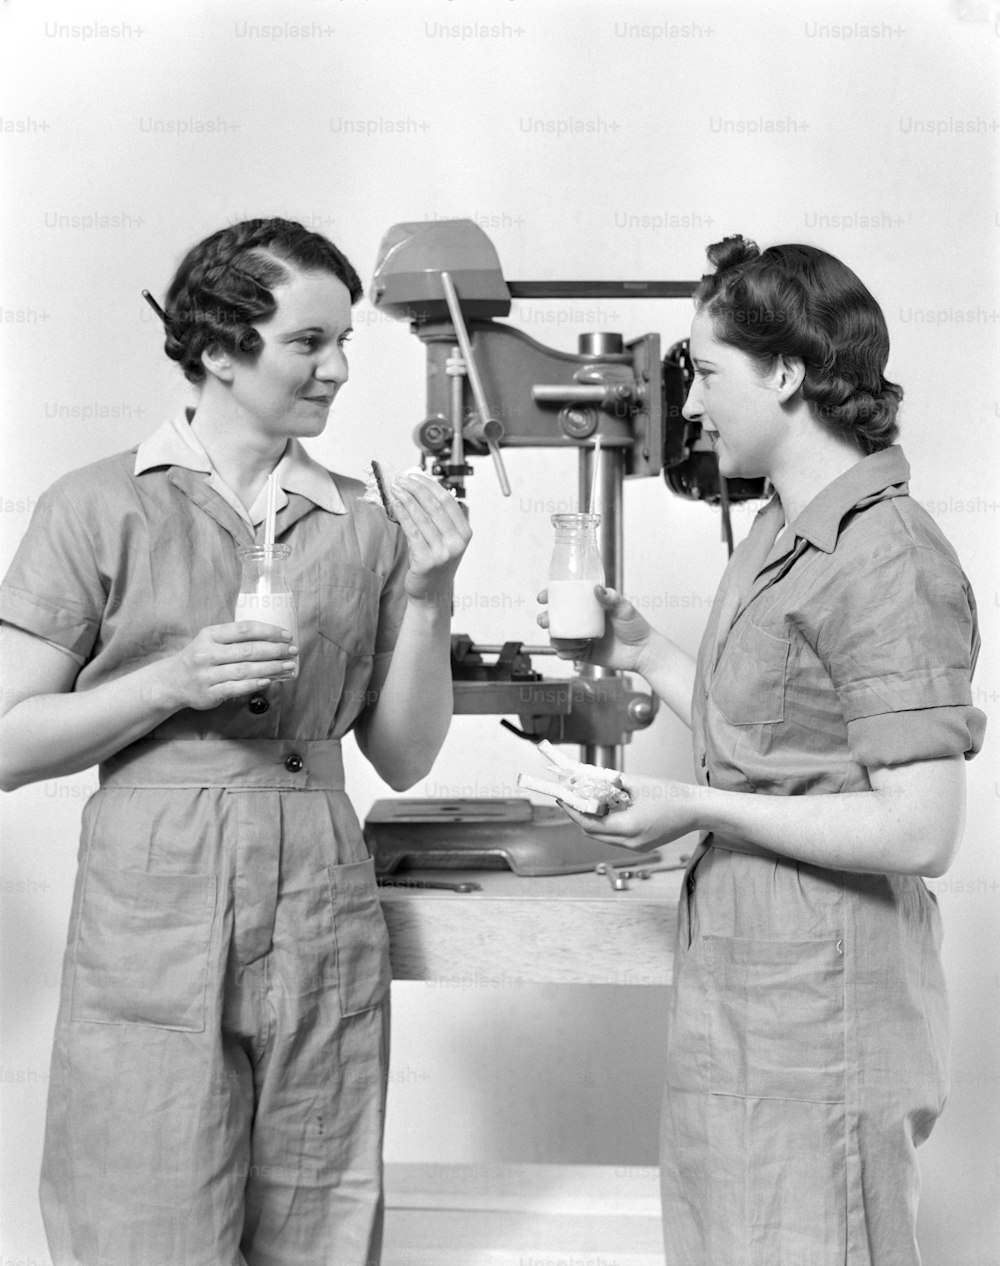 ÉTATS-UNIS - Vers les années 1940 : Deux ouvrières debout près d’une perceuse à colonne, mangeant un sandwich et buvant du lait.